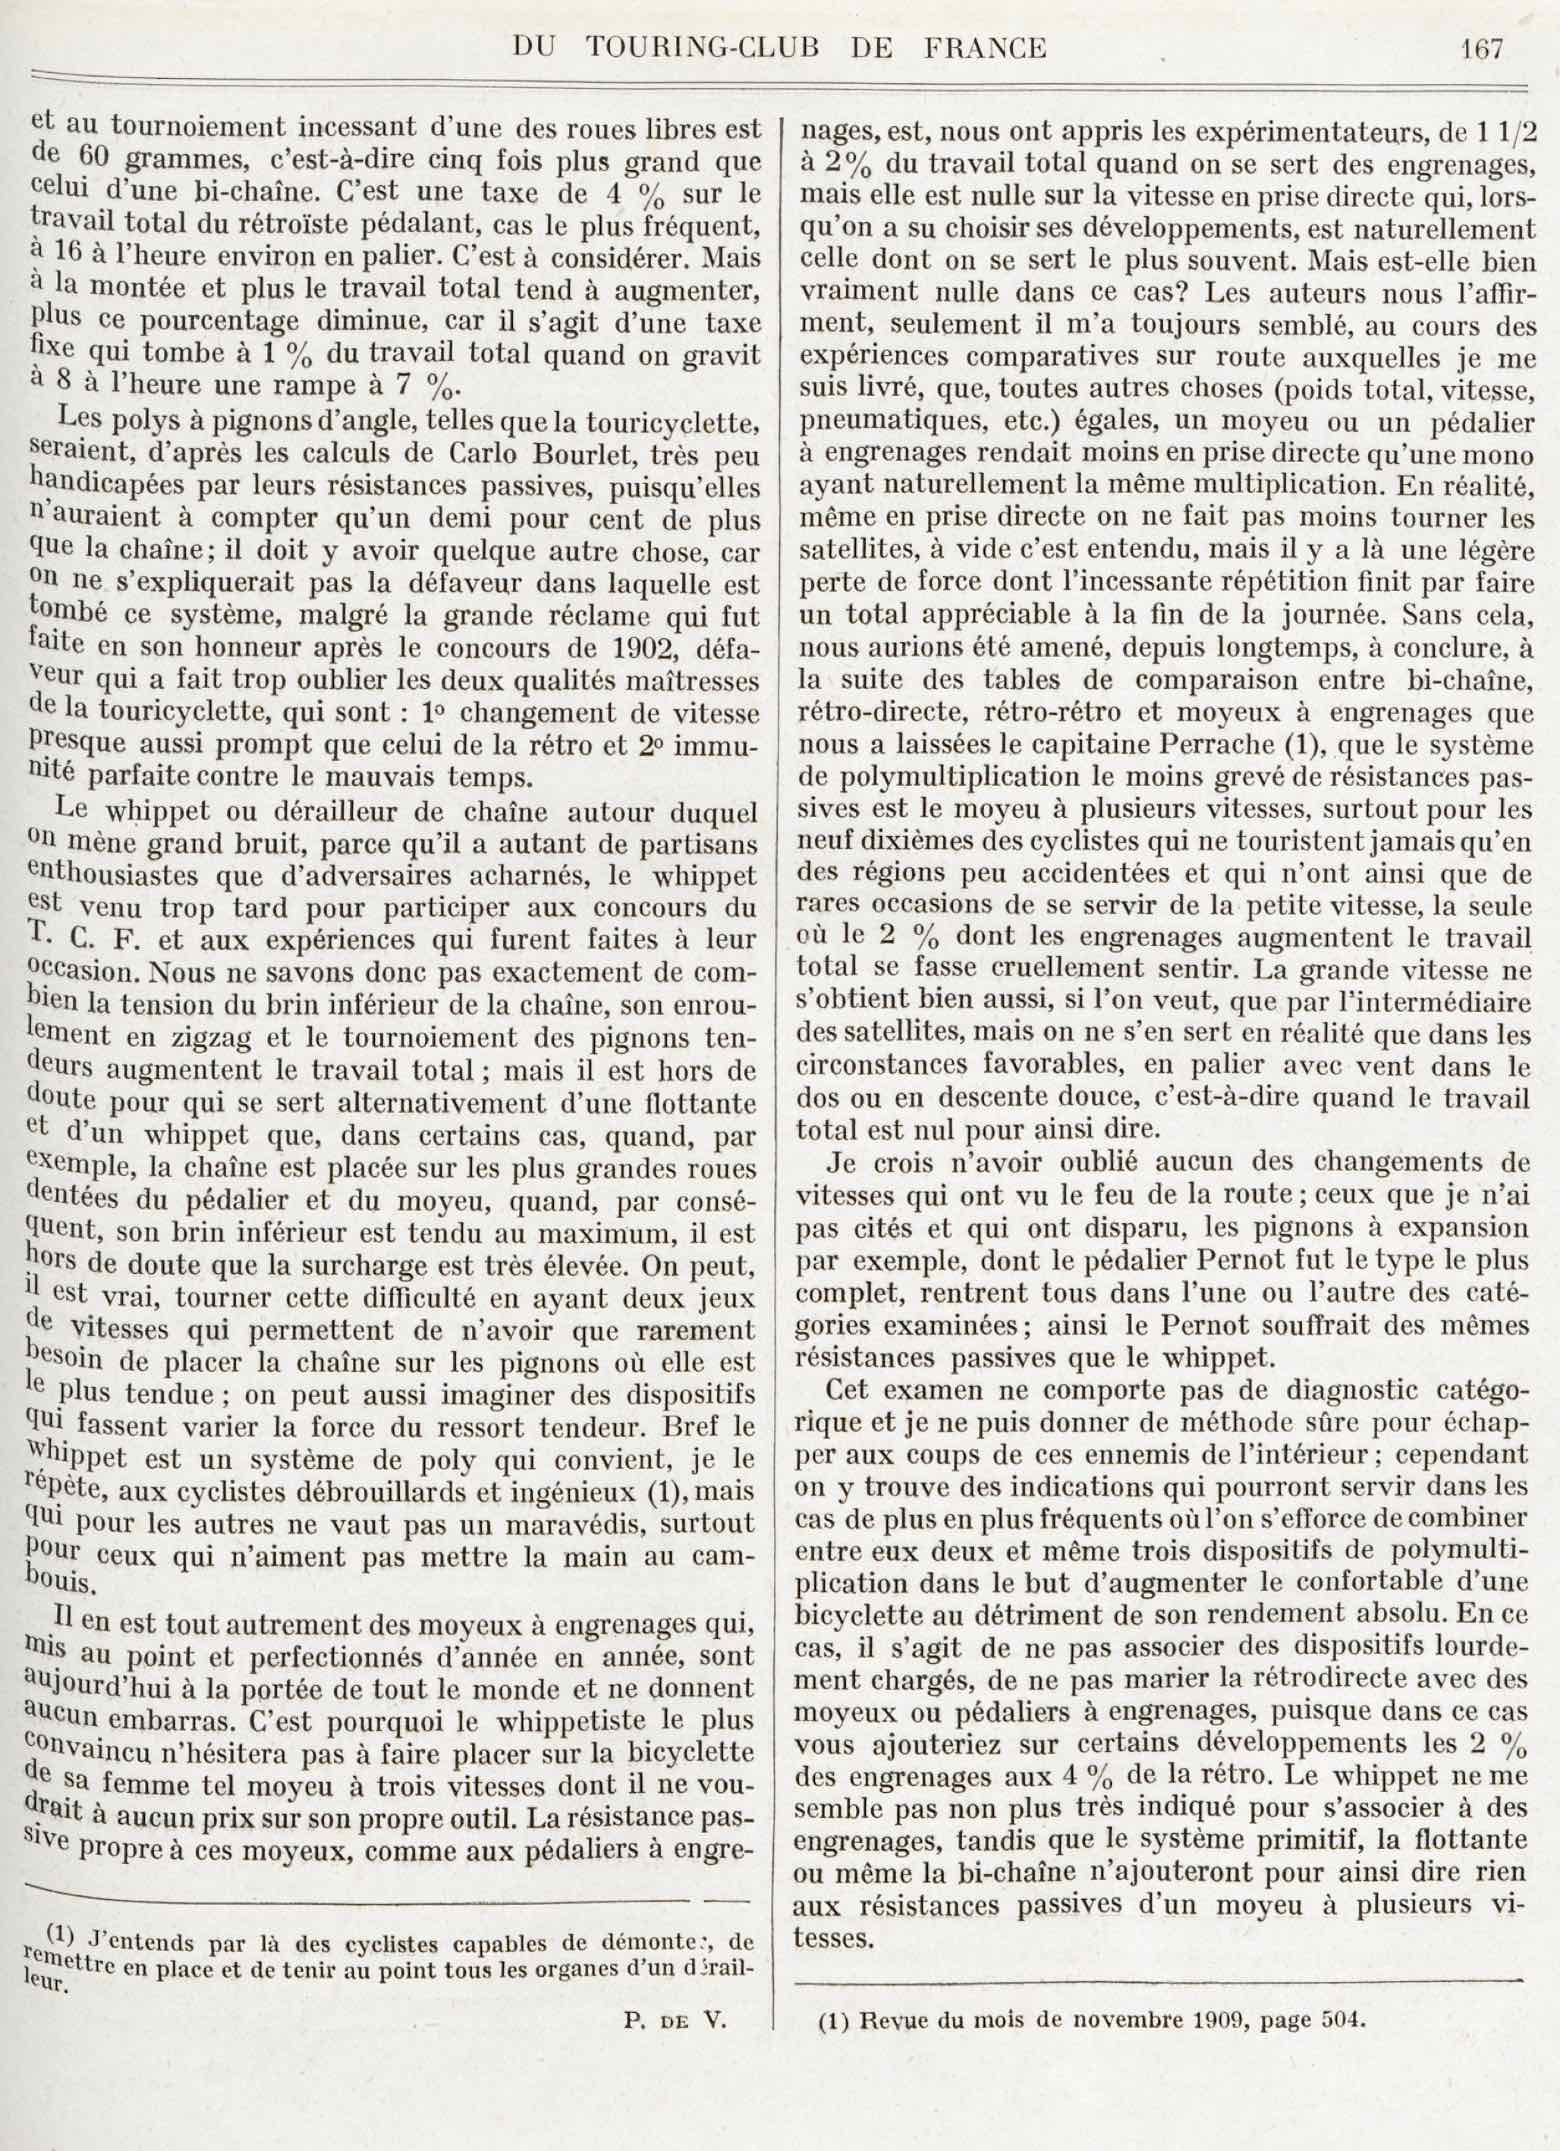 T.C.F. Revue Mensuelle April 1914 - Nos Ennemis (part VI) scan 3 main image